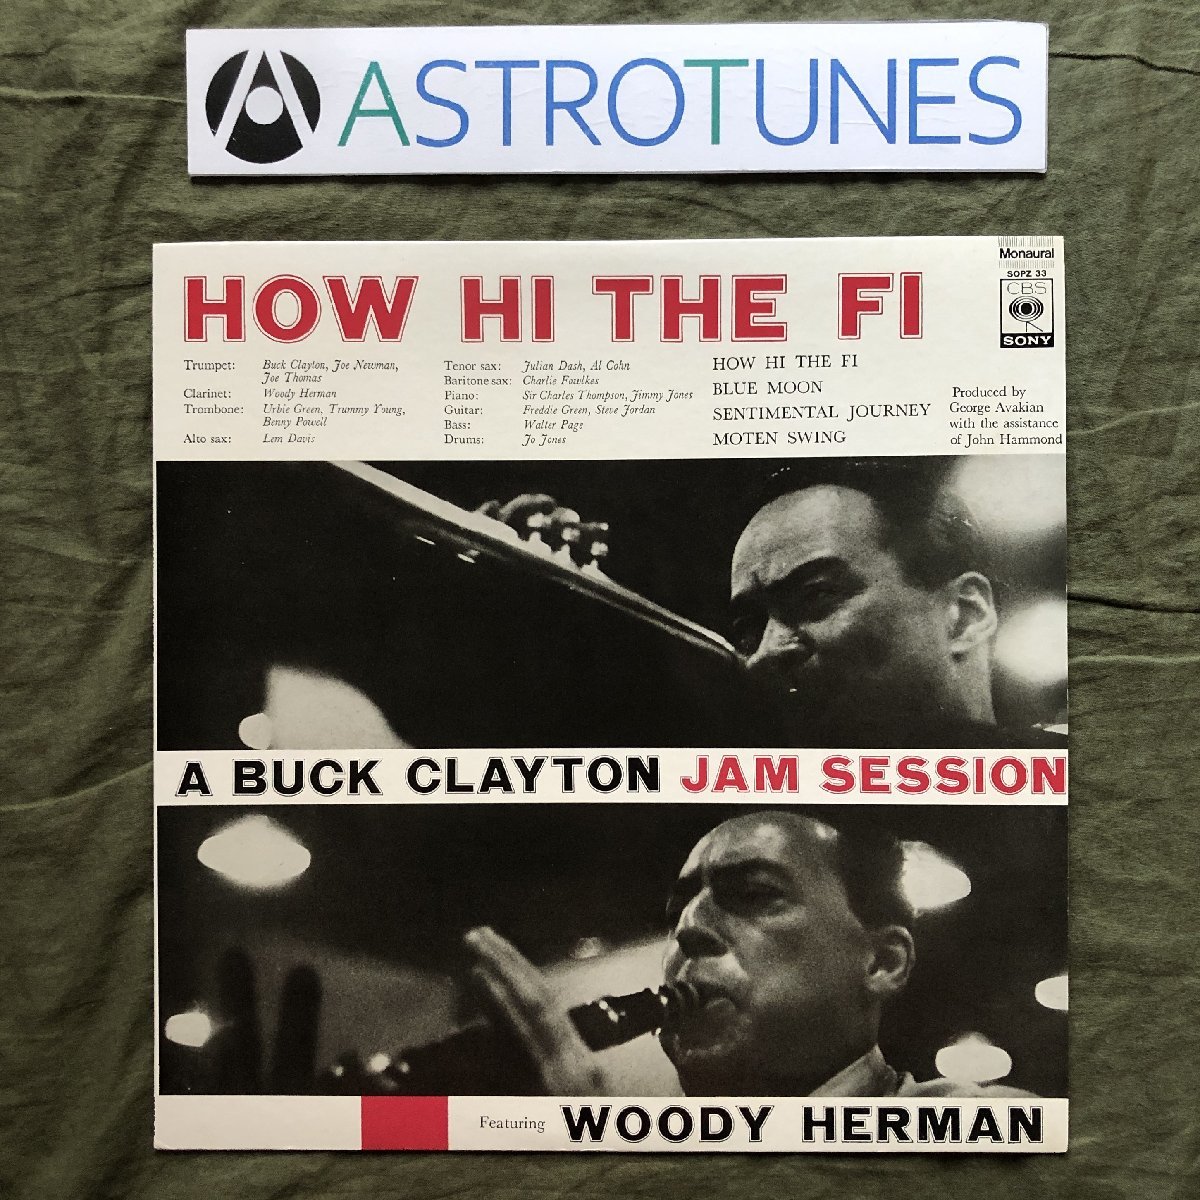 傷なし美盤 良ジャケ 国内盤 レア盤 Buck Clayton LPレコード Featuring Woody Herman ? How Hi The Fi Freddy Green,Steve Jordan,Al Cohn_画像1